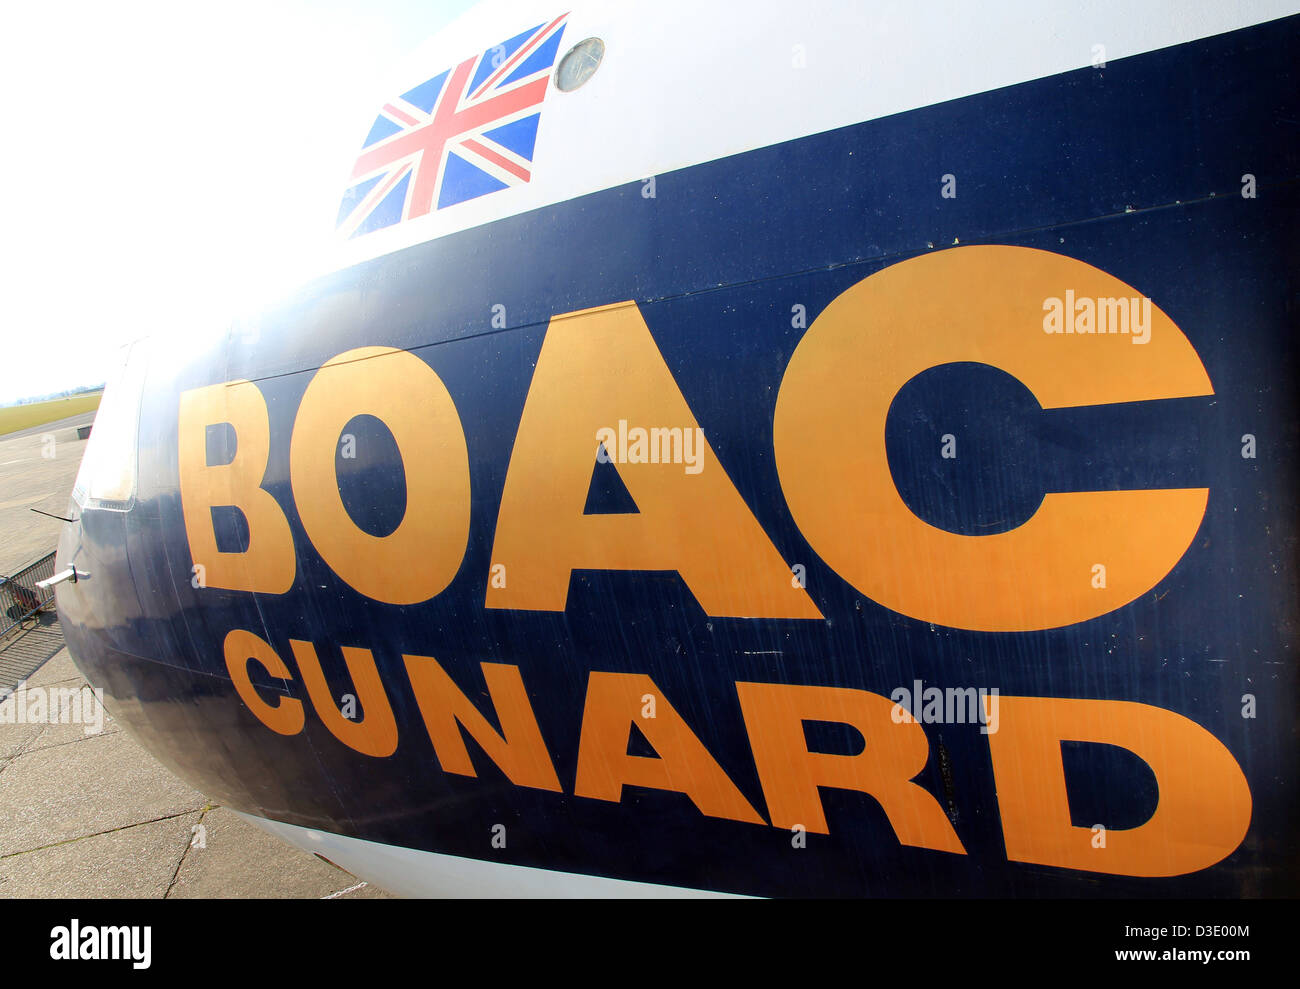 Vickers VC10 British aereo jet di BOAC Foto Stock